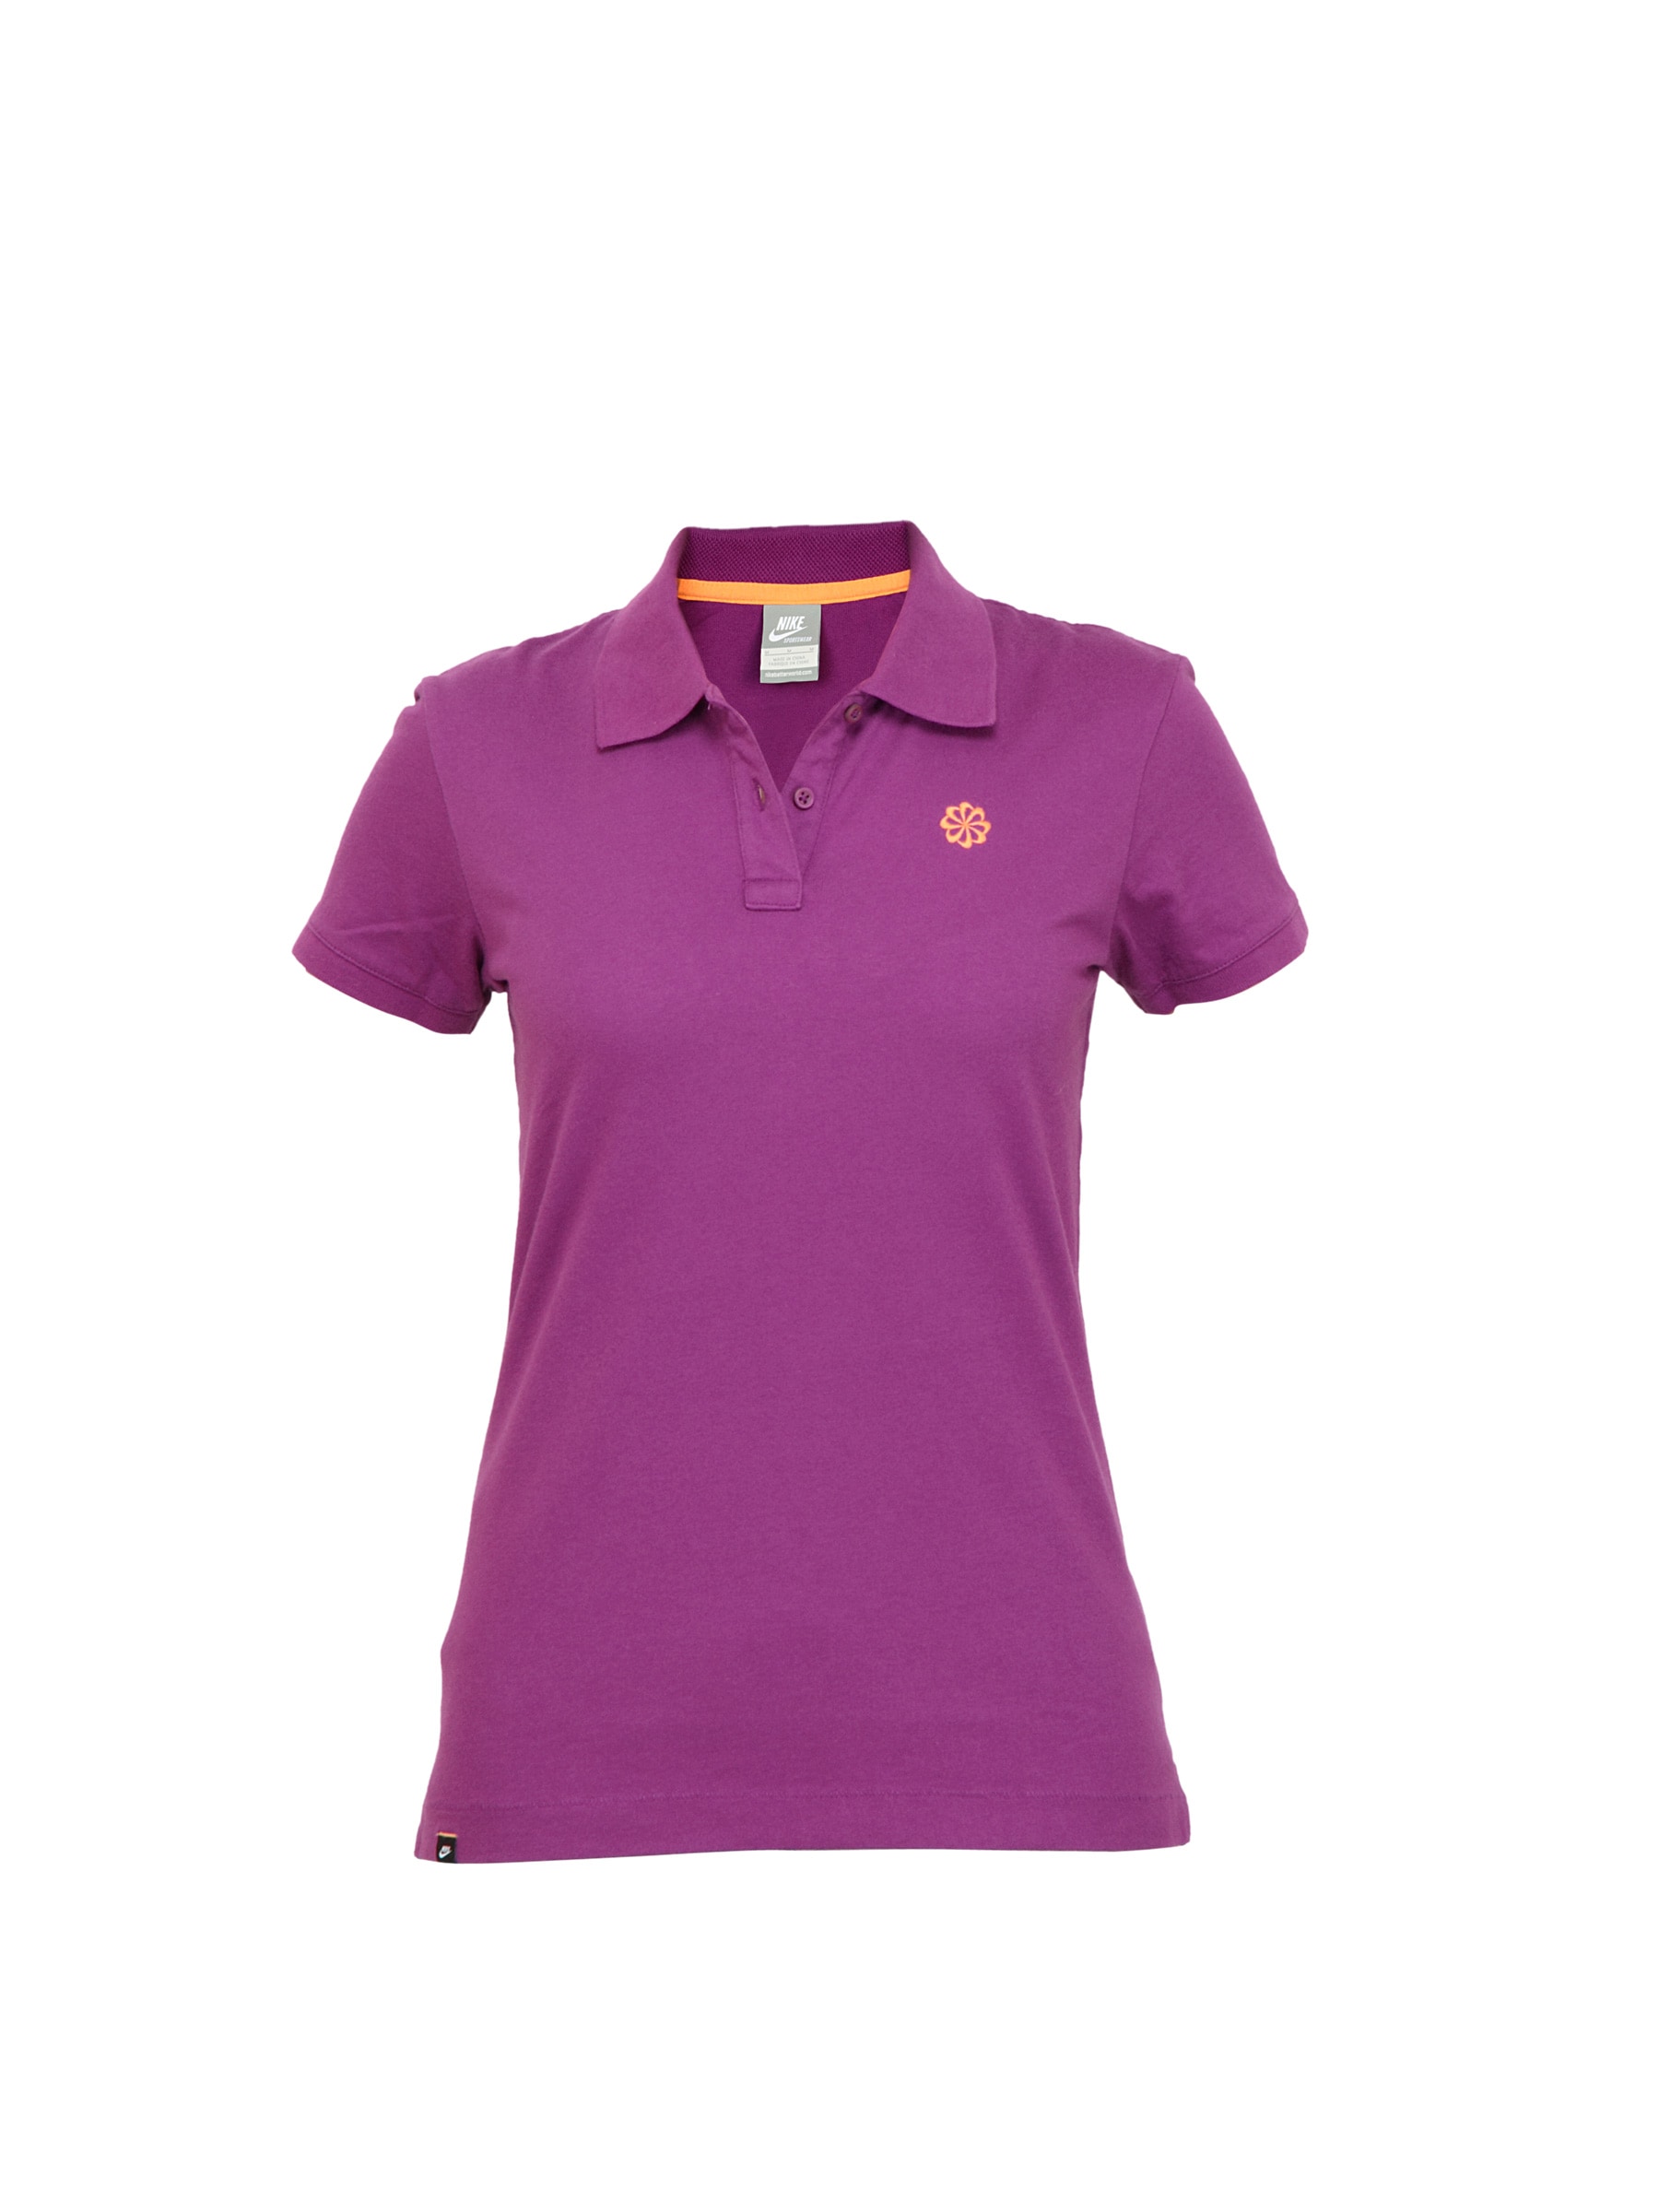 Nike Women Purple Polo Tshirt